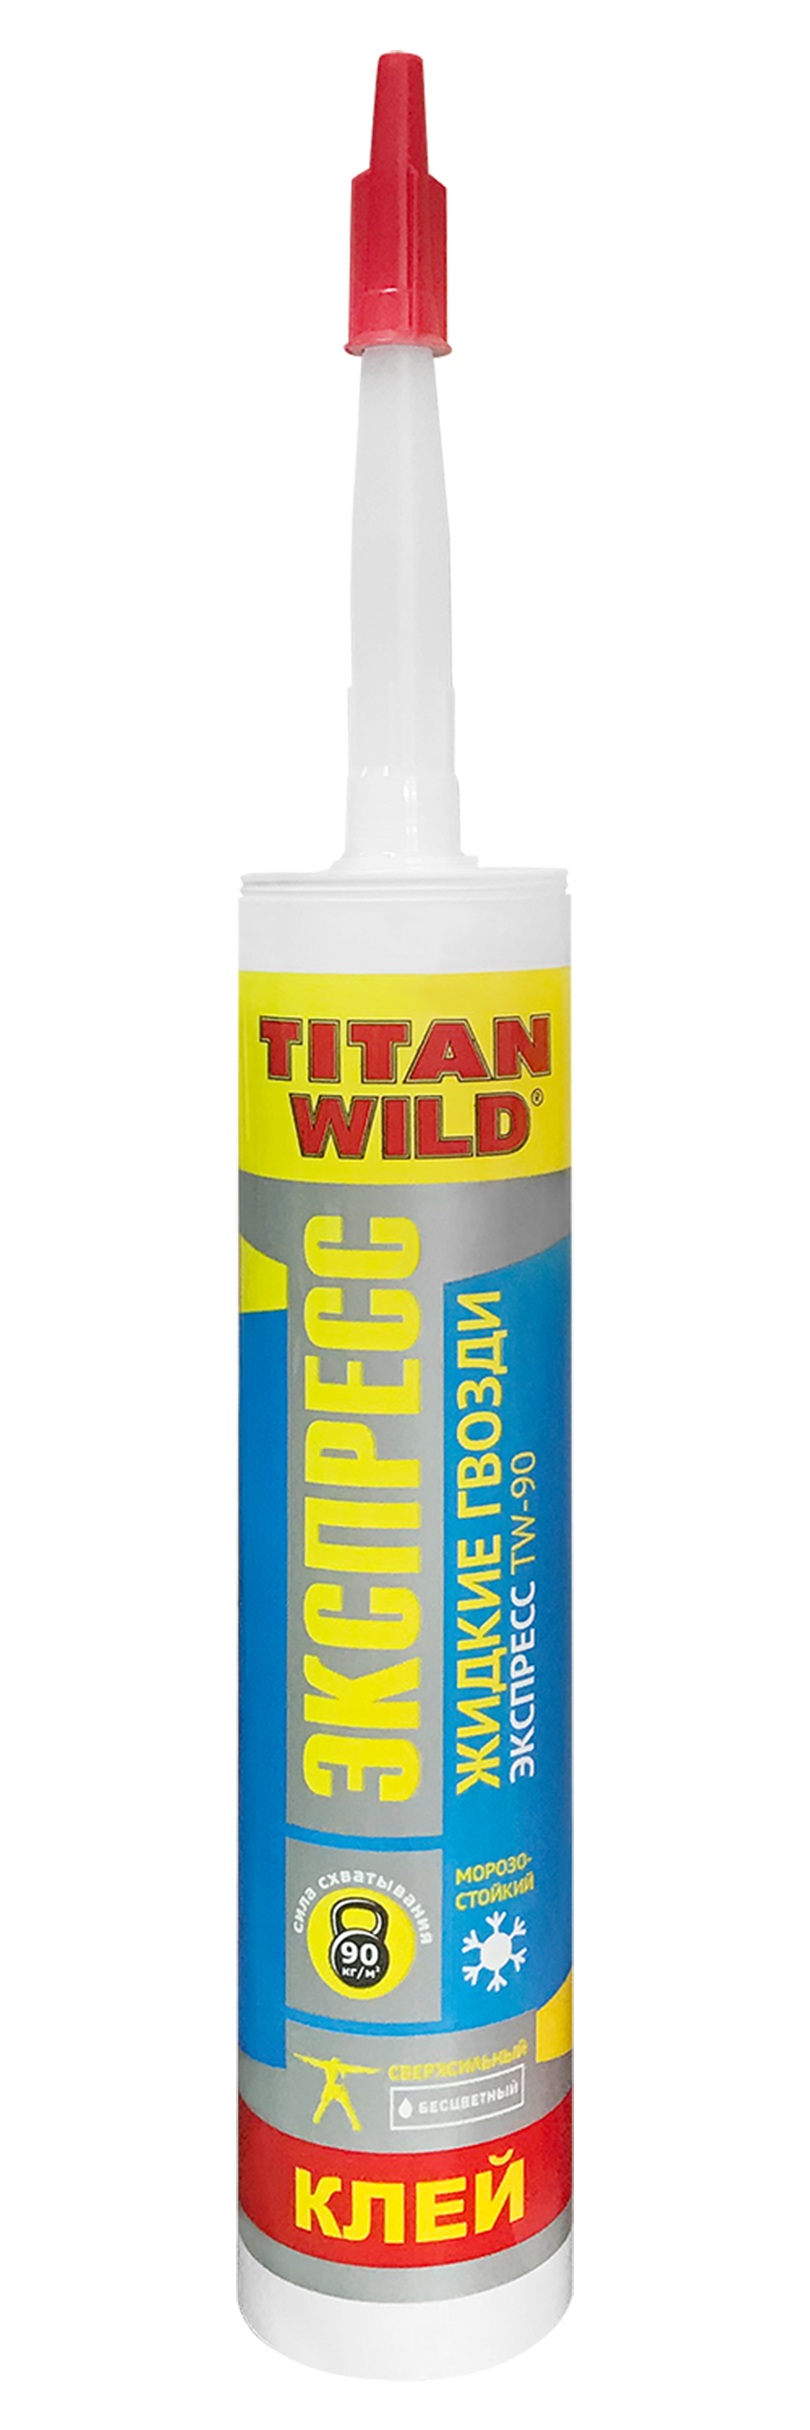 Клей жидкие гвозди прозрачный. Titan Wild жидкие гвозди. Жидкие гвозди экспресс 310мл, Titan Wild. Жидкие гвозди Титан универсал 310гр. Клей Титан универсальный.